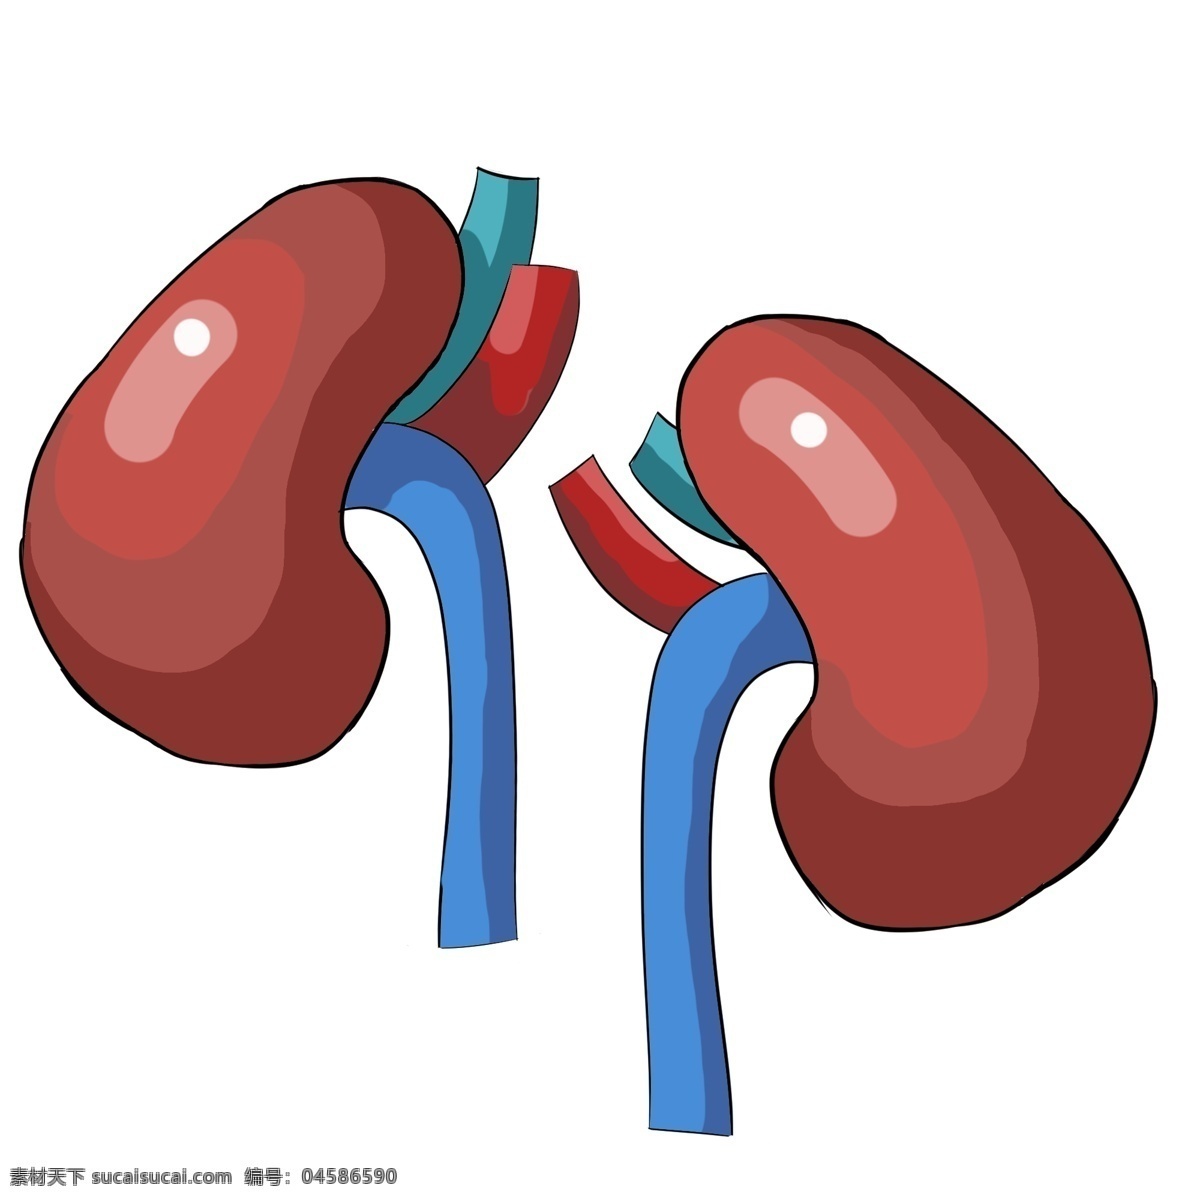 红色 肝脏 装饰 插画 红色的肝脏 人体器官肝脏 肝脏装饰 肝脏插画 立体肝脏 卡通肝脏 健康的肝脏